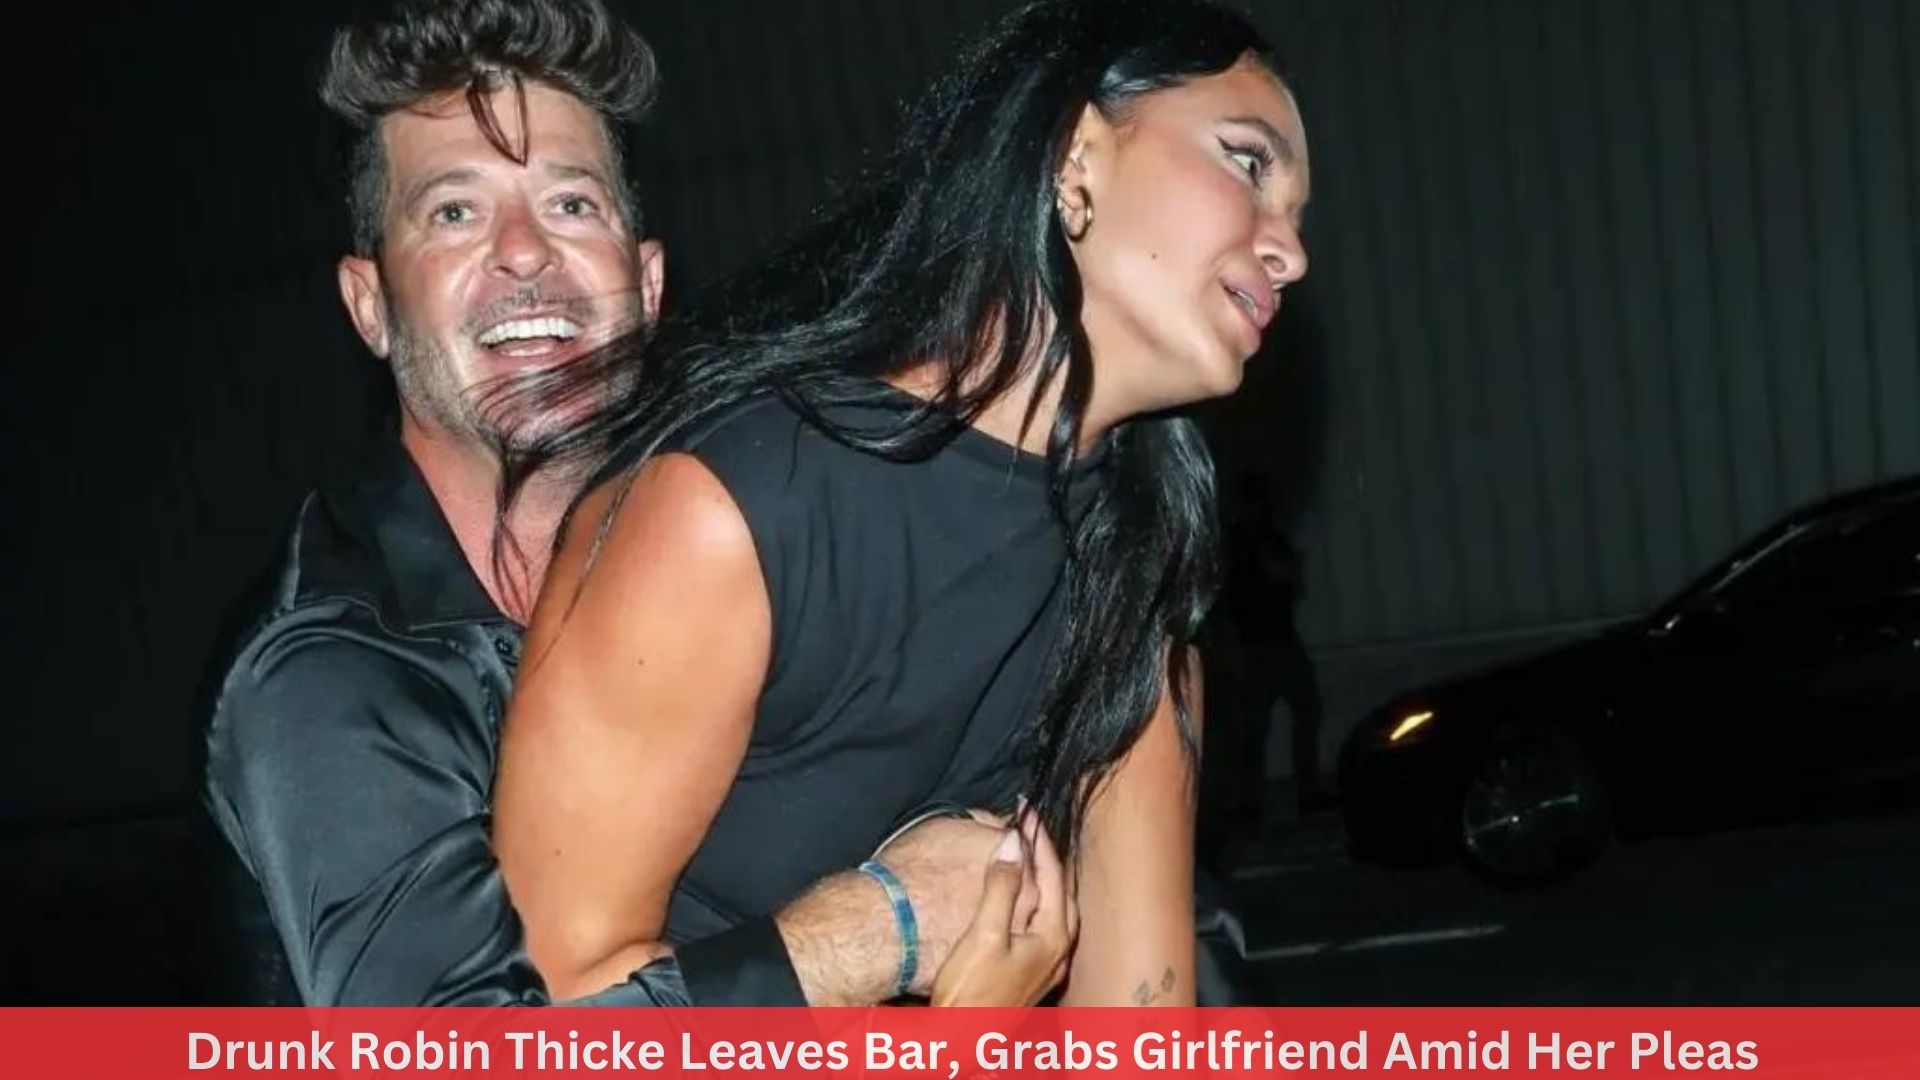 Drunk Robin Thicke Leaves Bar, Grabs Girlfriend Amid Her Pleas